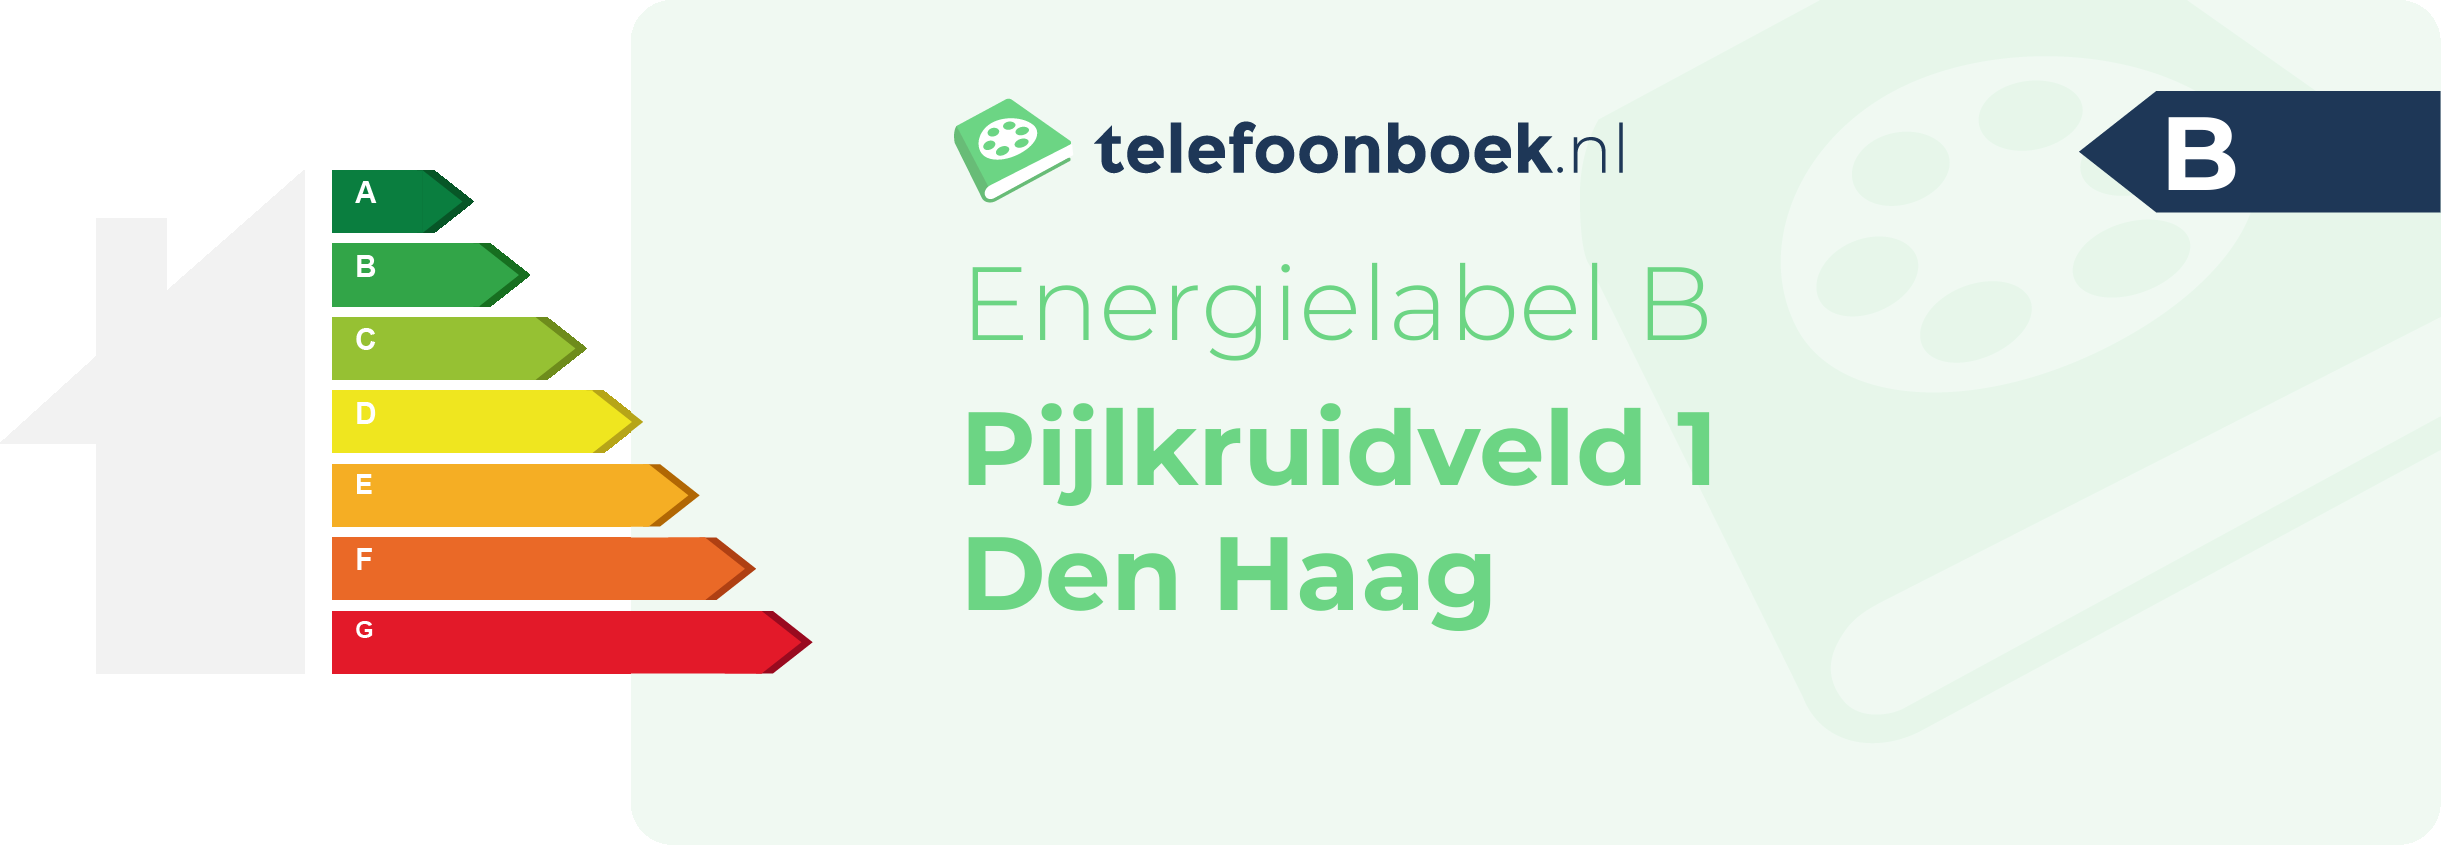 Energielabel Pijlkruidveld 1 Den Haag